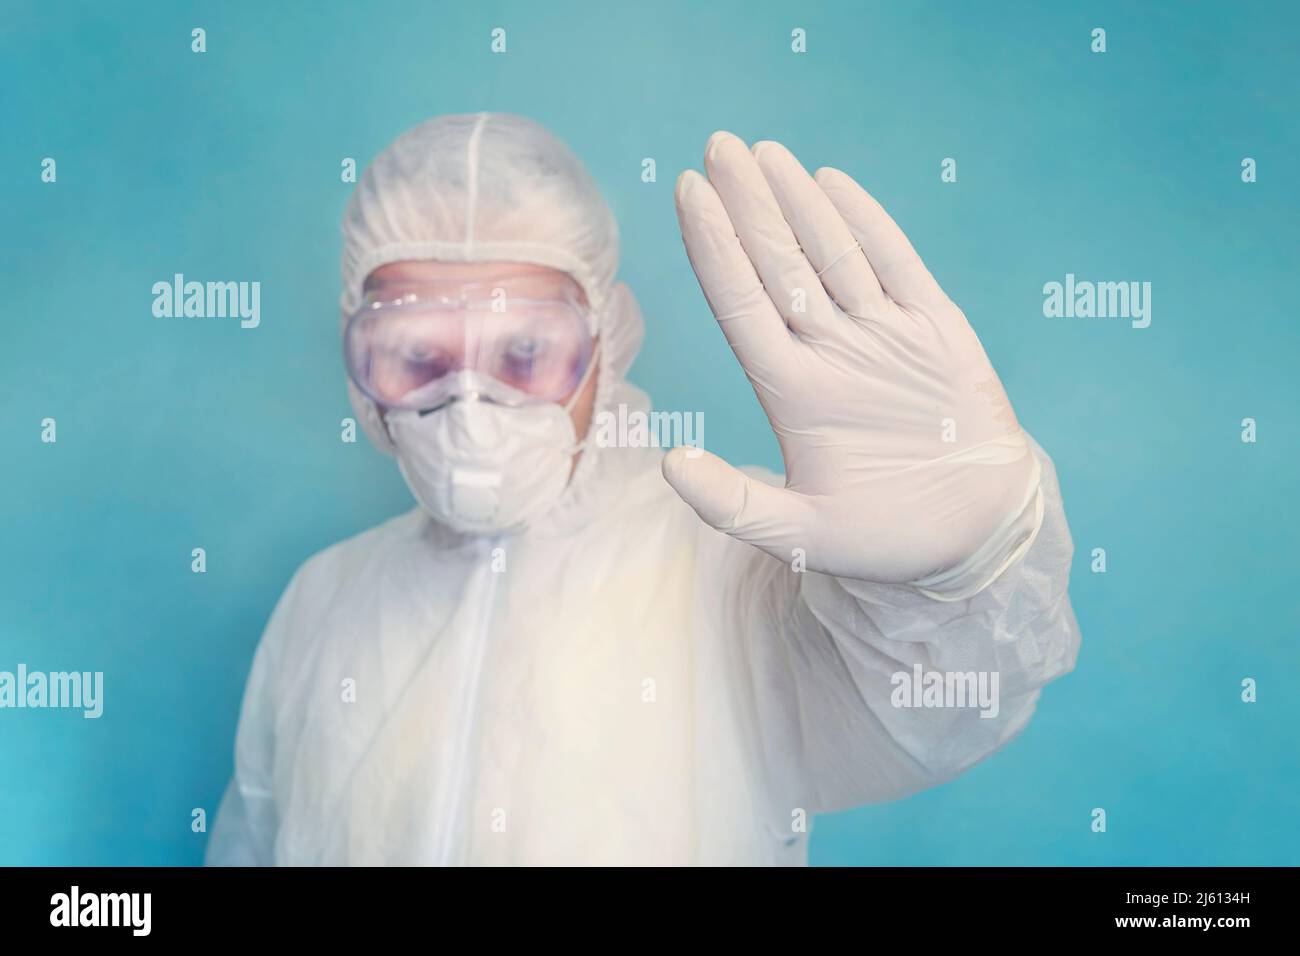 Medico con tuta completa e maschera che mostra stop segno con la sua mano su sfondo blu. Corona virus o covid-19 epidemia globale. Interrompere l'infezione Foto Stock